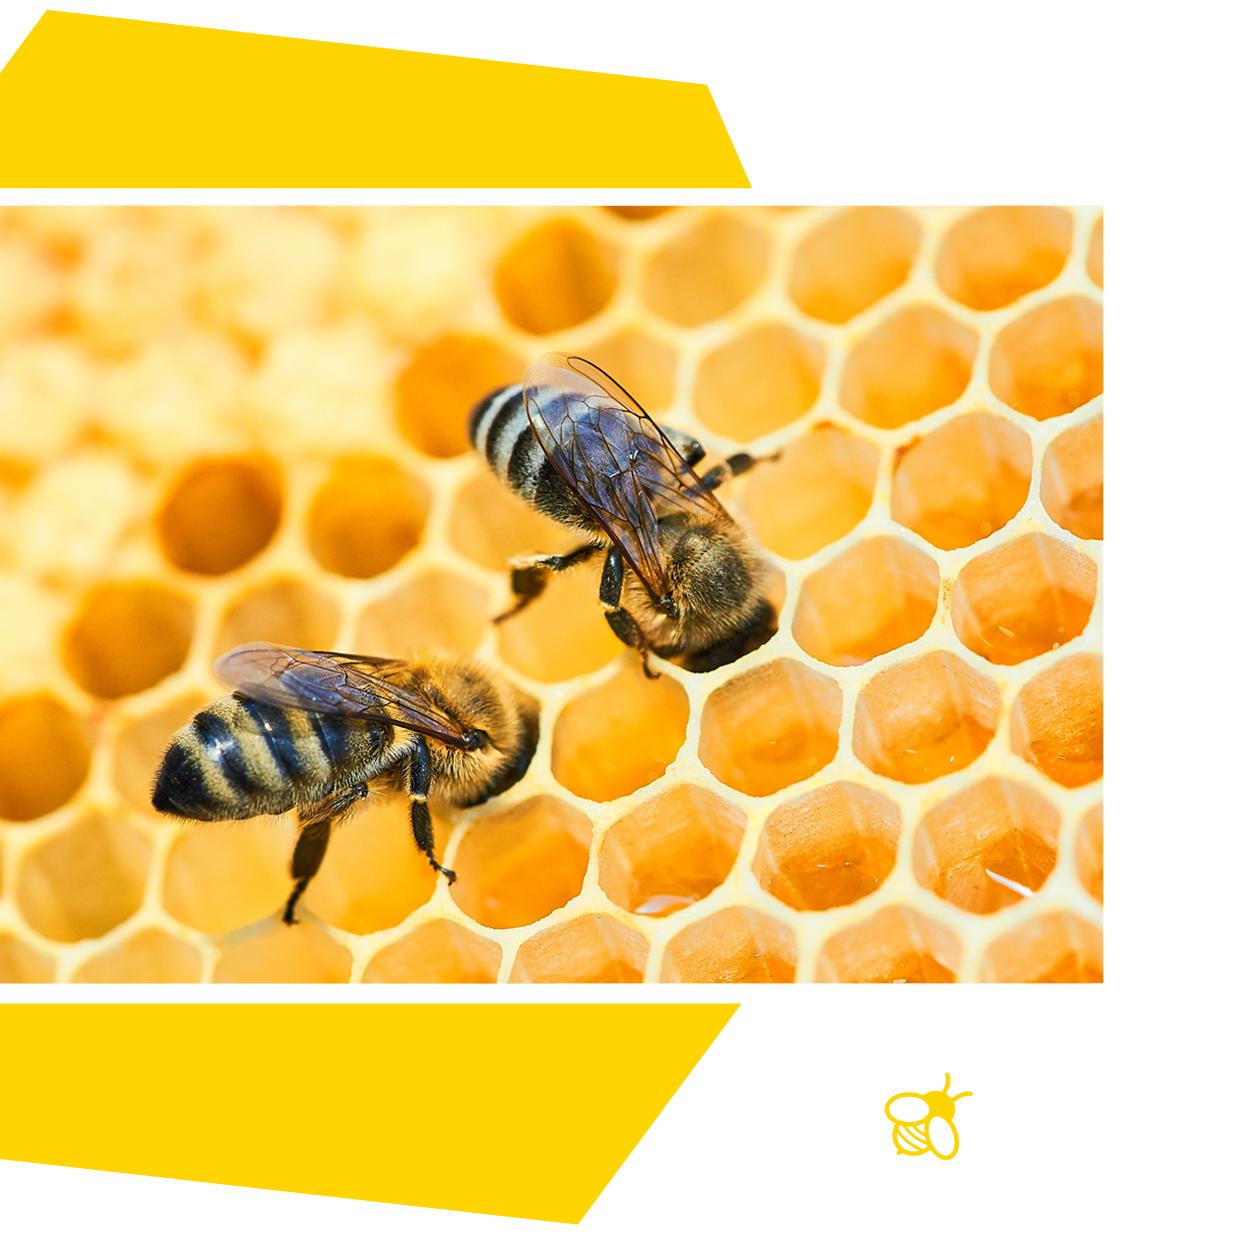 Deux abeilles mettent leur tête dans une alvéoles